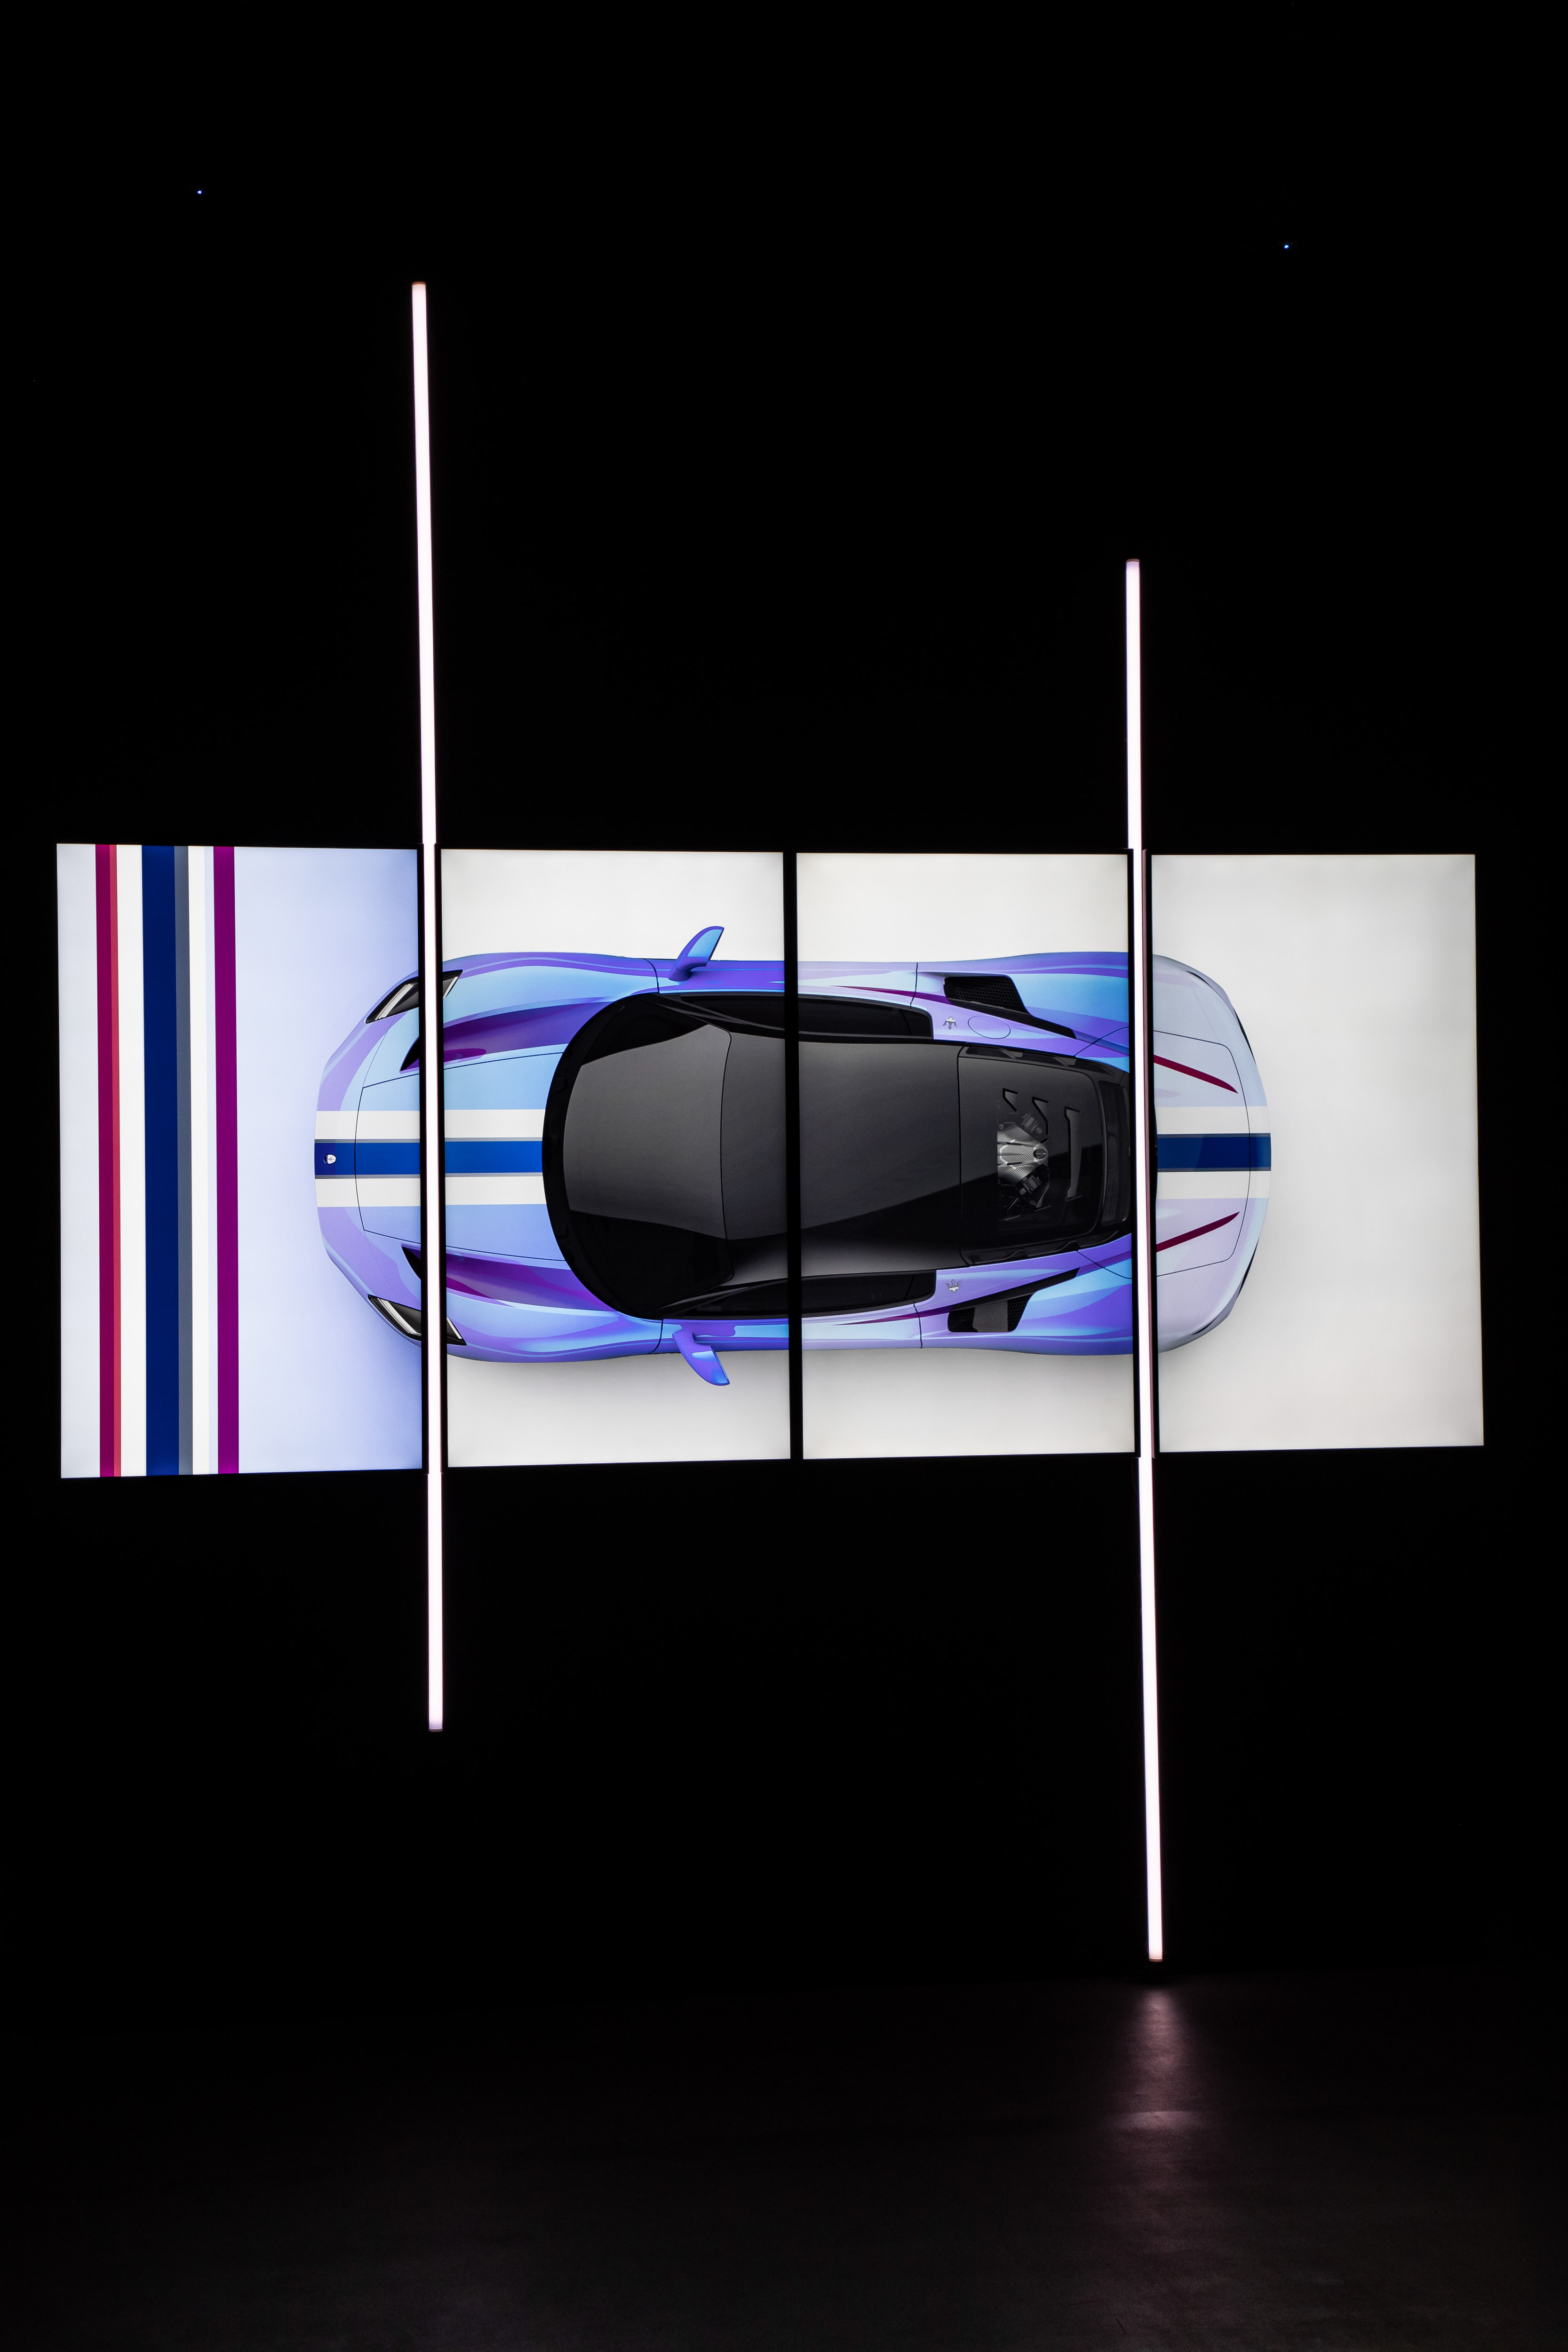 https://s3.paultan.org/image/2020/09/Maserati-Fuoriserie-programme-16.jpg